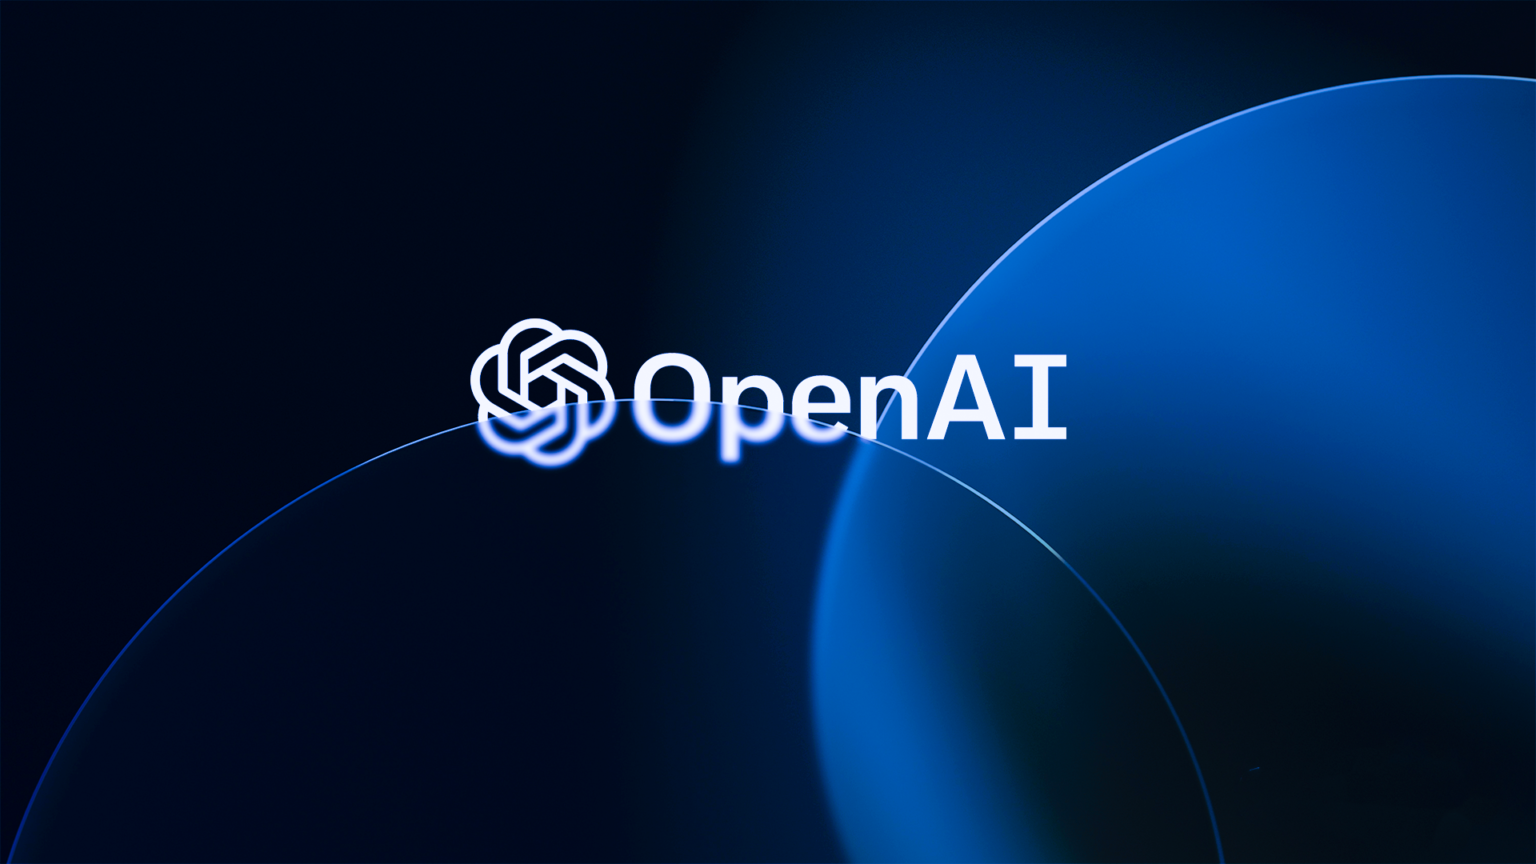 OpenAI cria Sora, IA para transformar textos em vídeos.